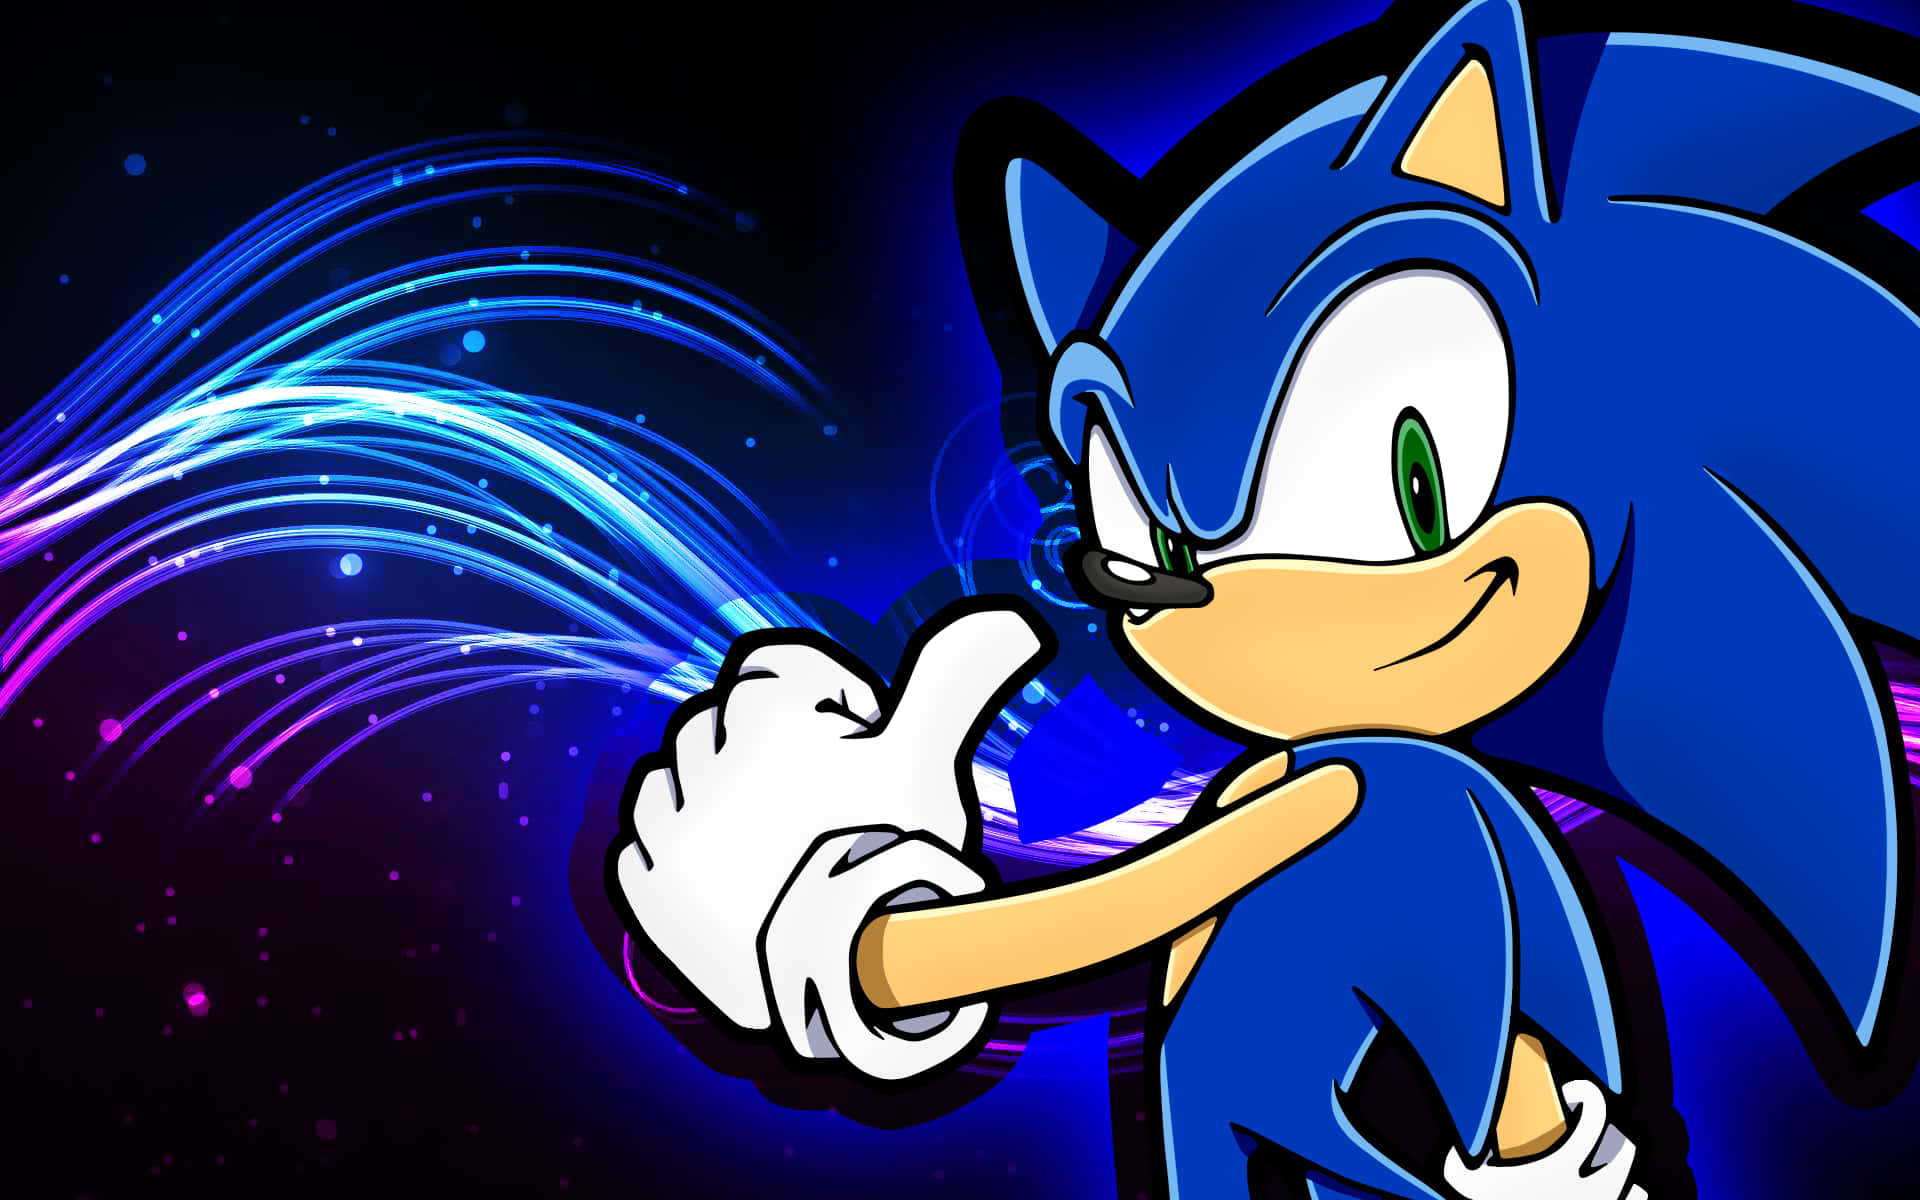 Sonicthe Hedgehog Celebra 25 Años De Juegos Legendarios En Sonic 2 Hd Fondo de pantalla